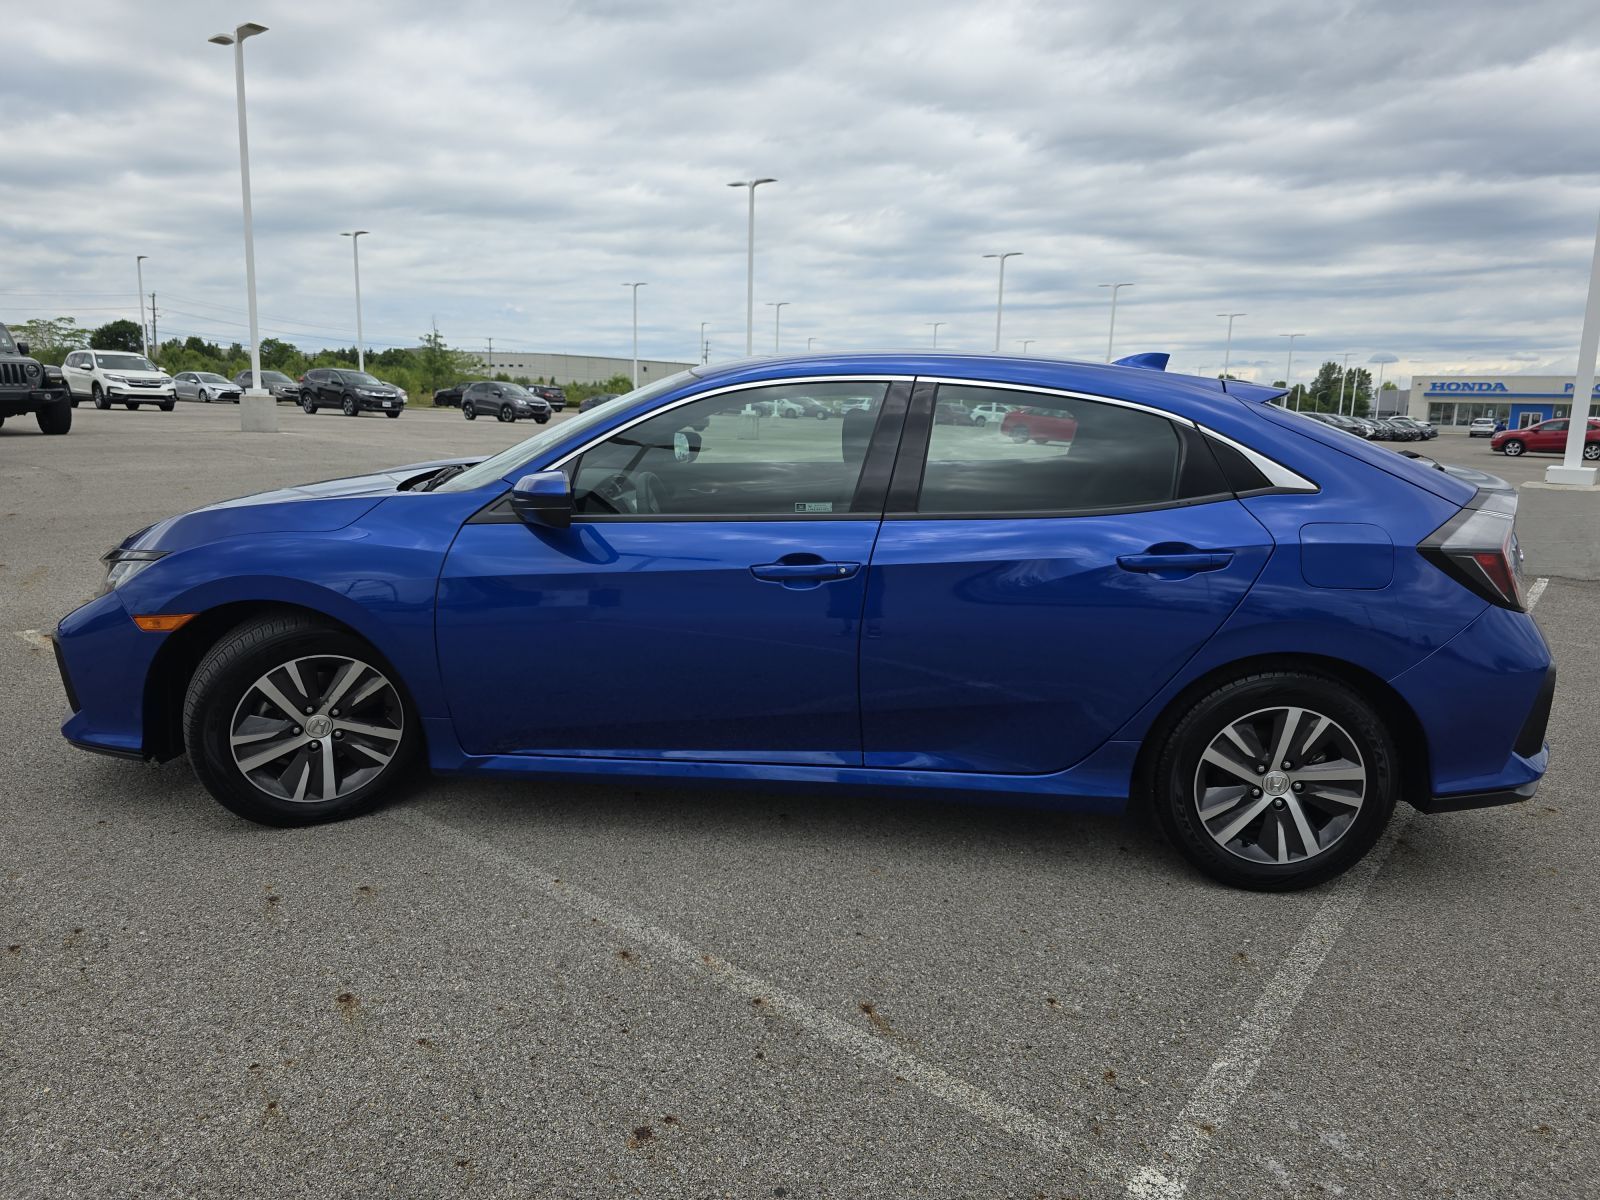 Used, 2020 Honda Civic LX CVT, Blue, G0730A-13